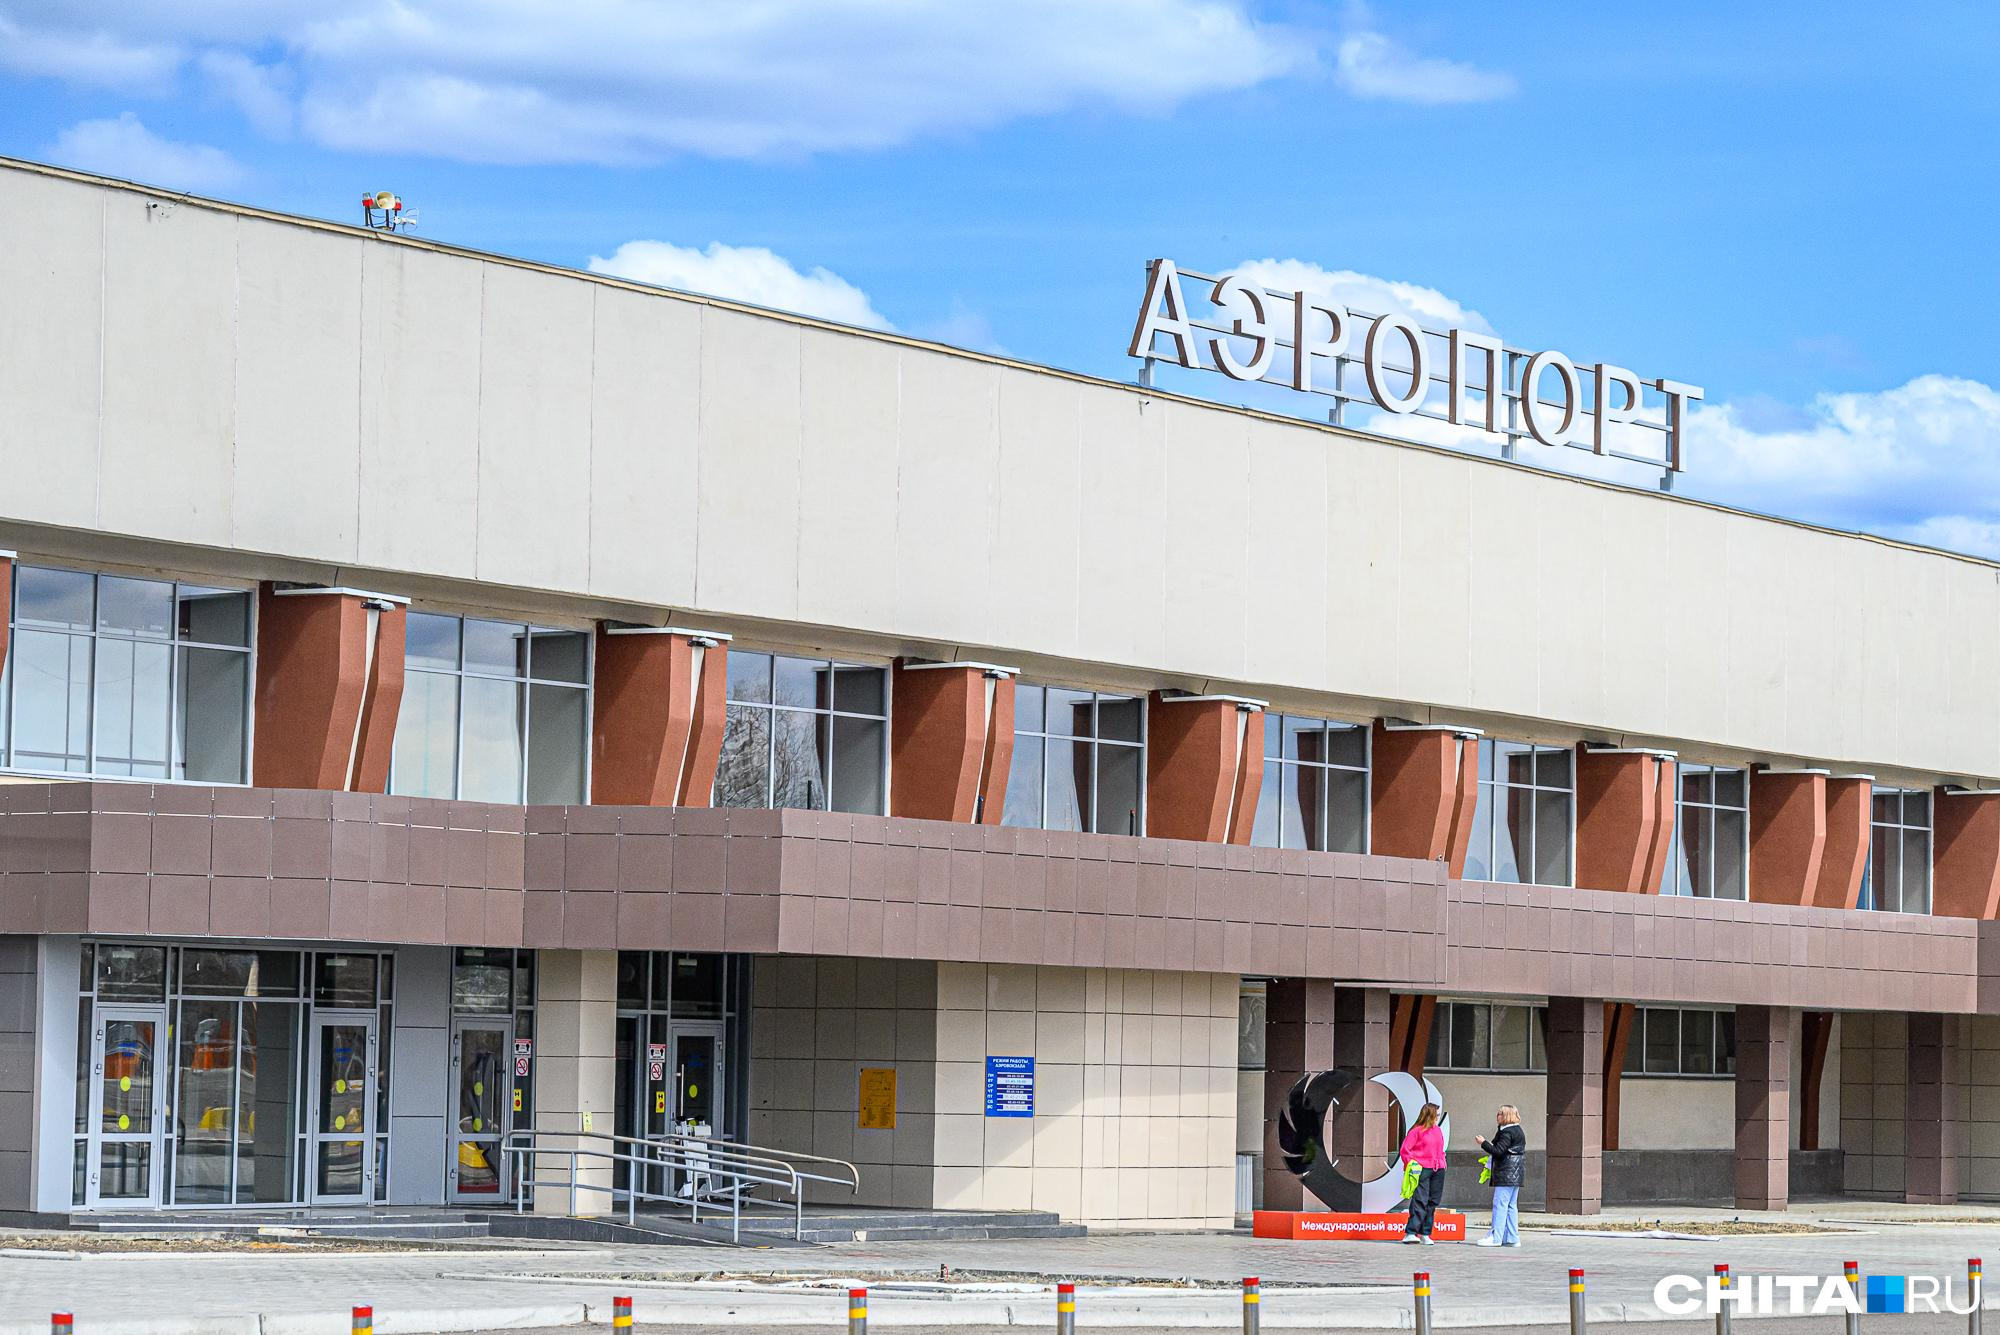 Аэропорт в Чите пригласил желающих заняться споттингом